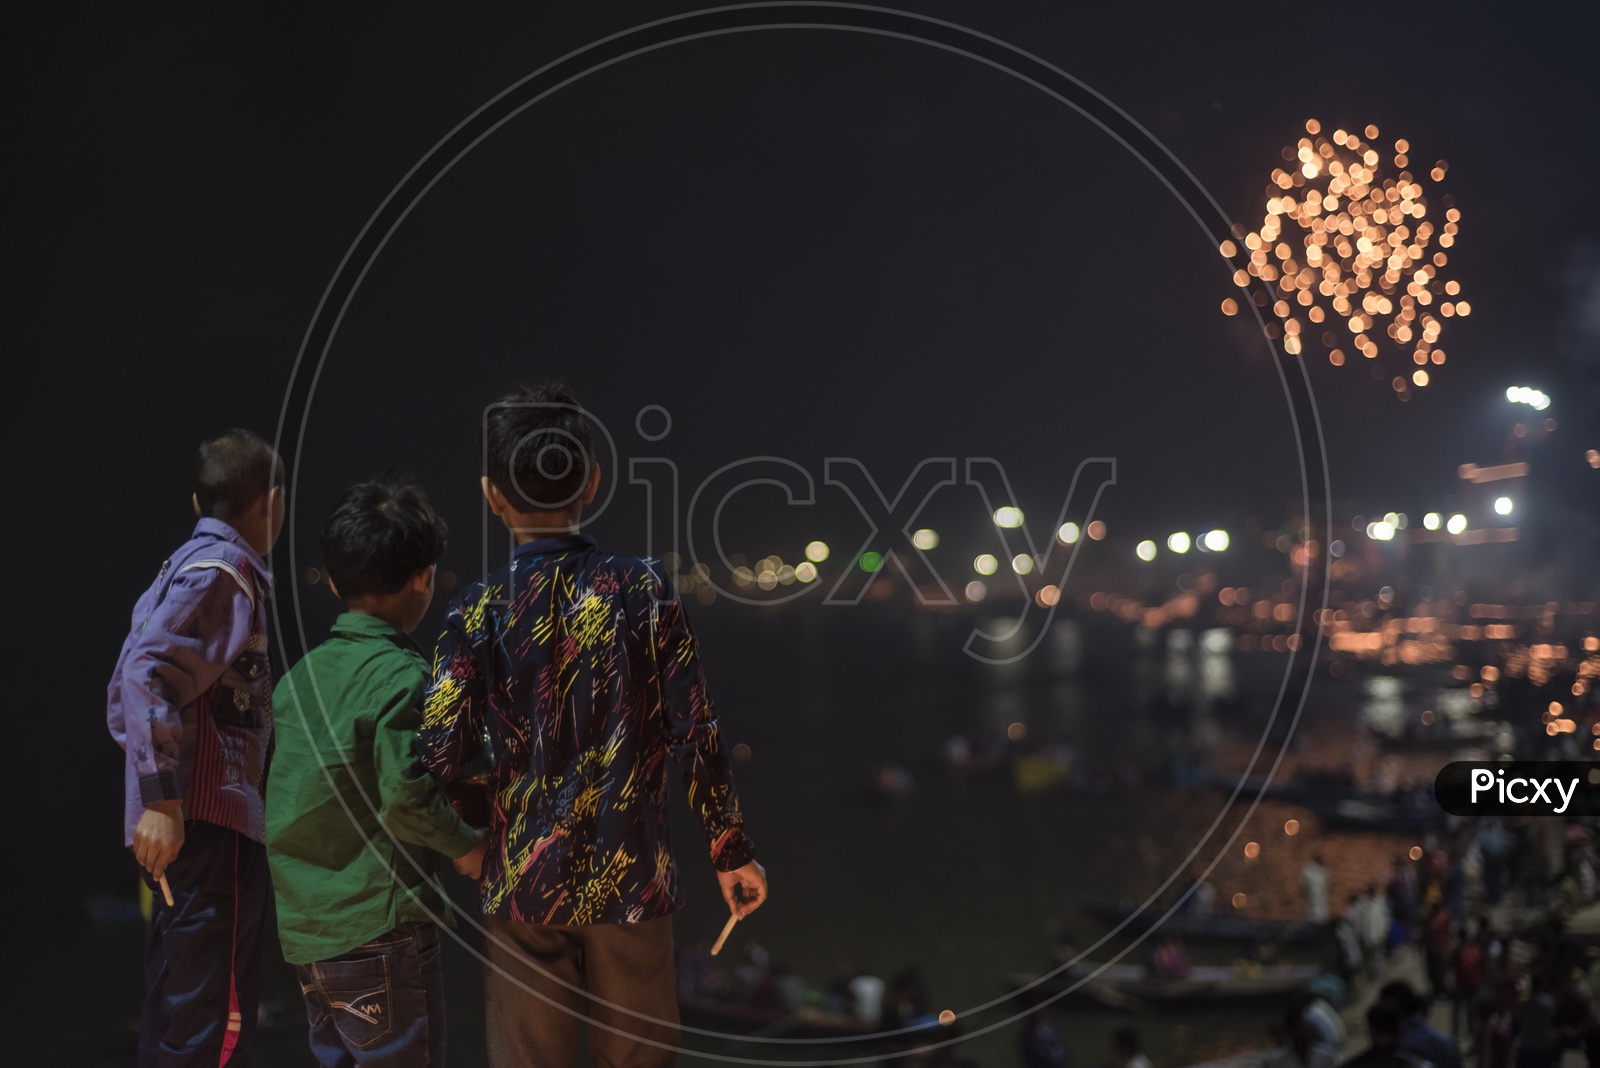 Children Celebrating Diwali in varanasi